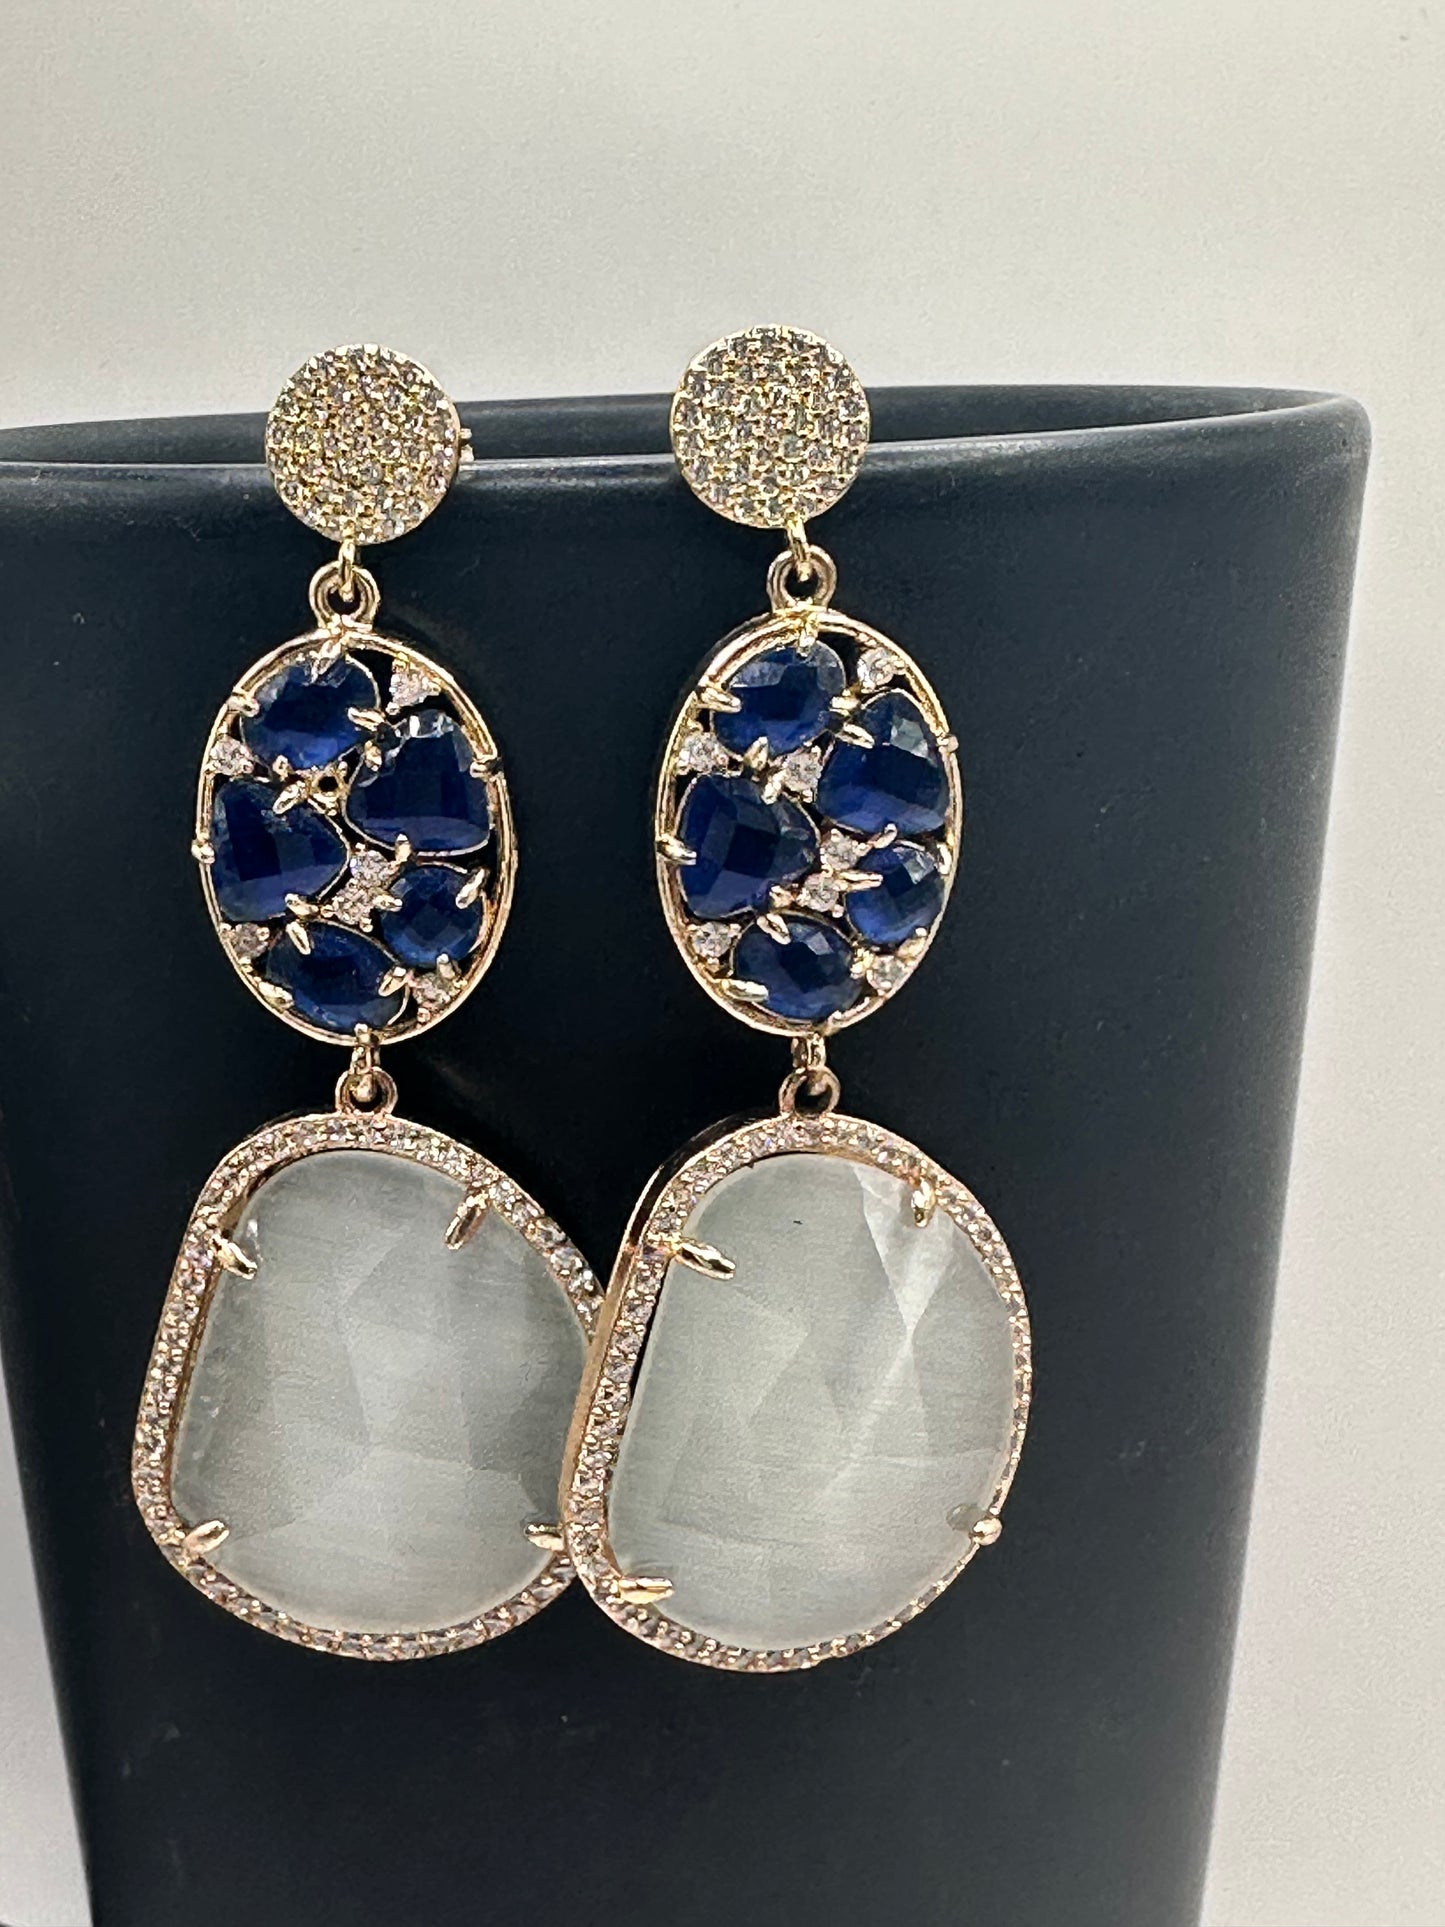 Blue/moonlight stone earrings